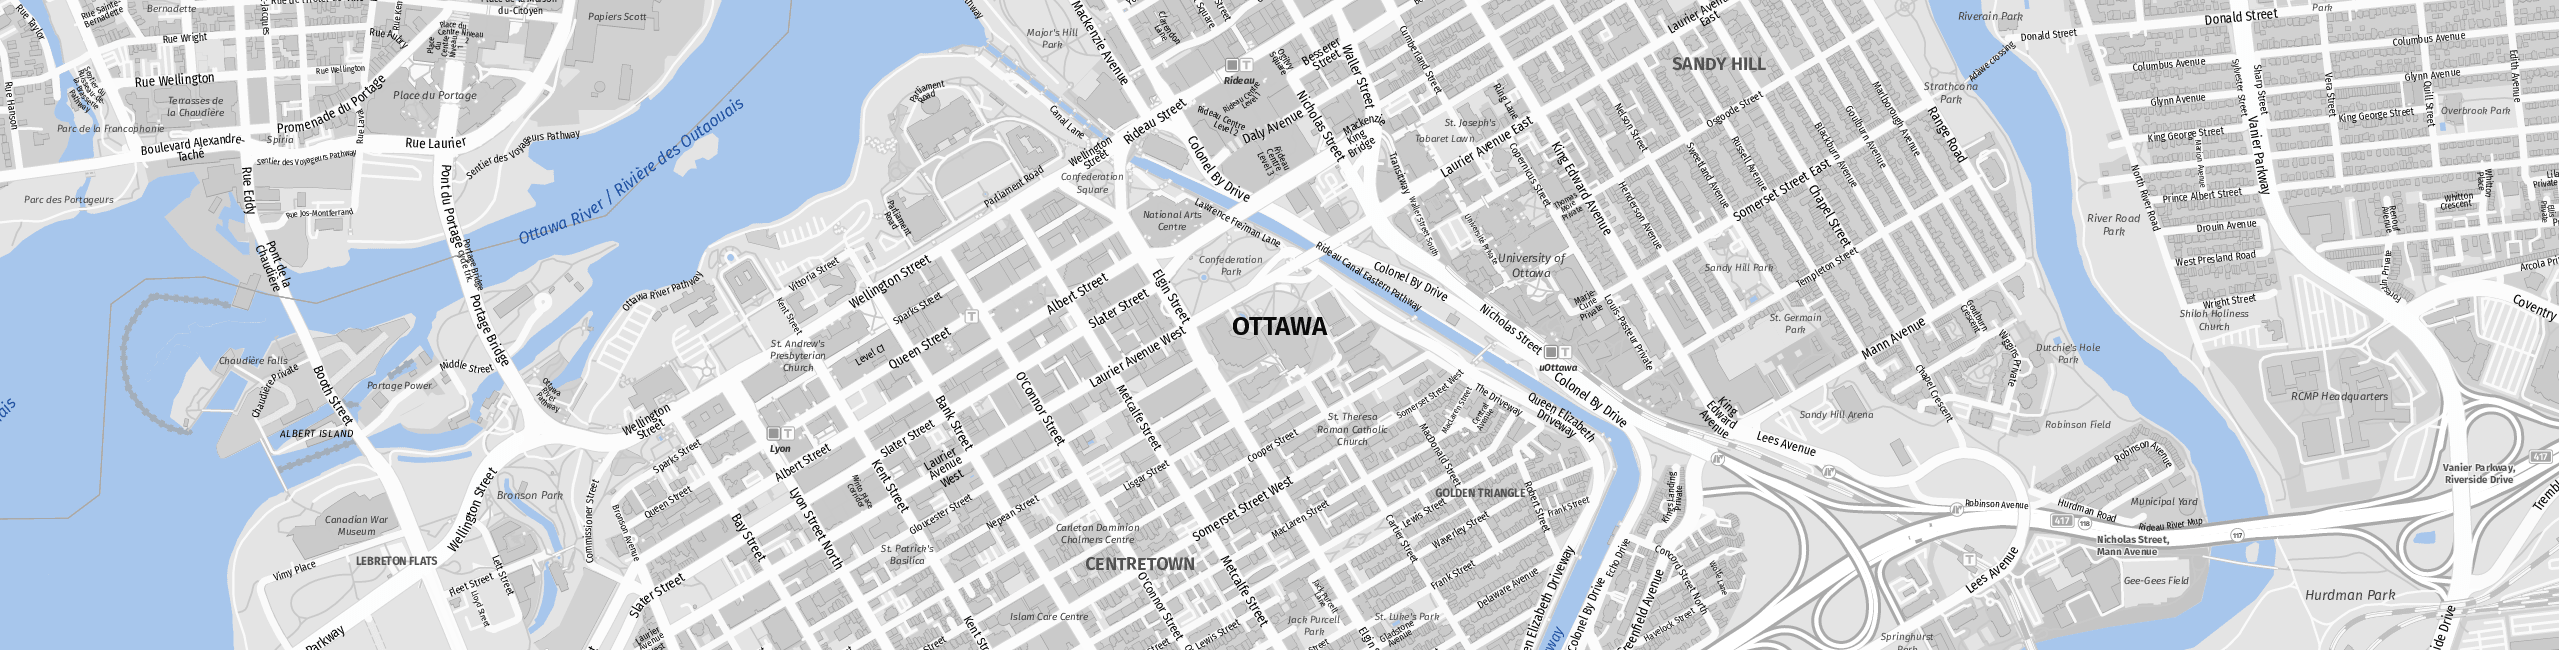 Stadtplan Ottawa zum Downloaden.